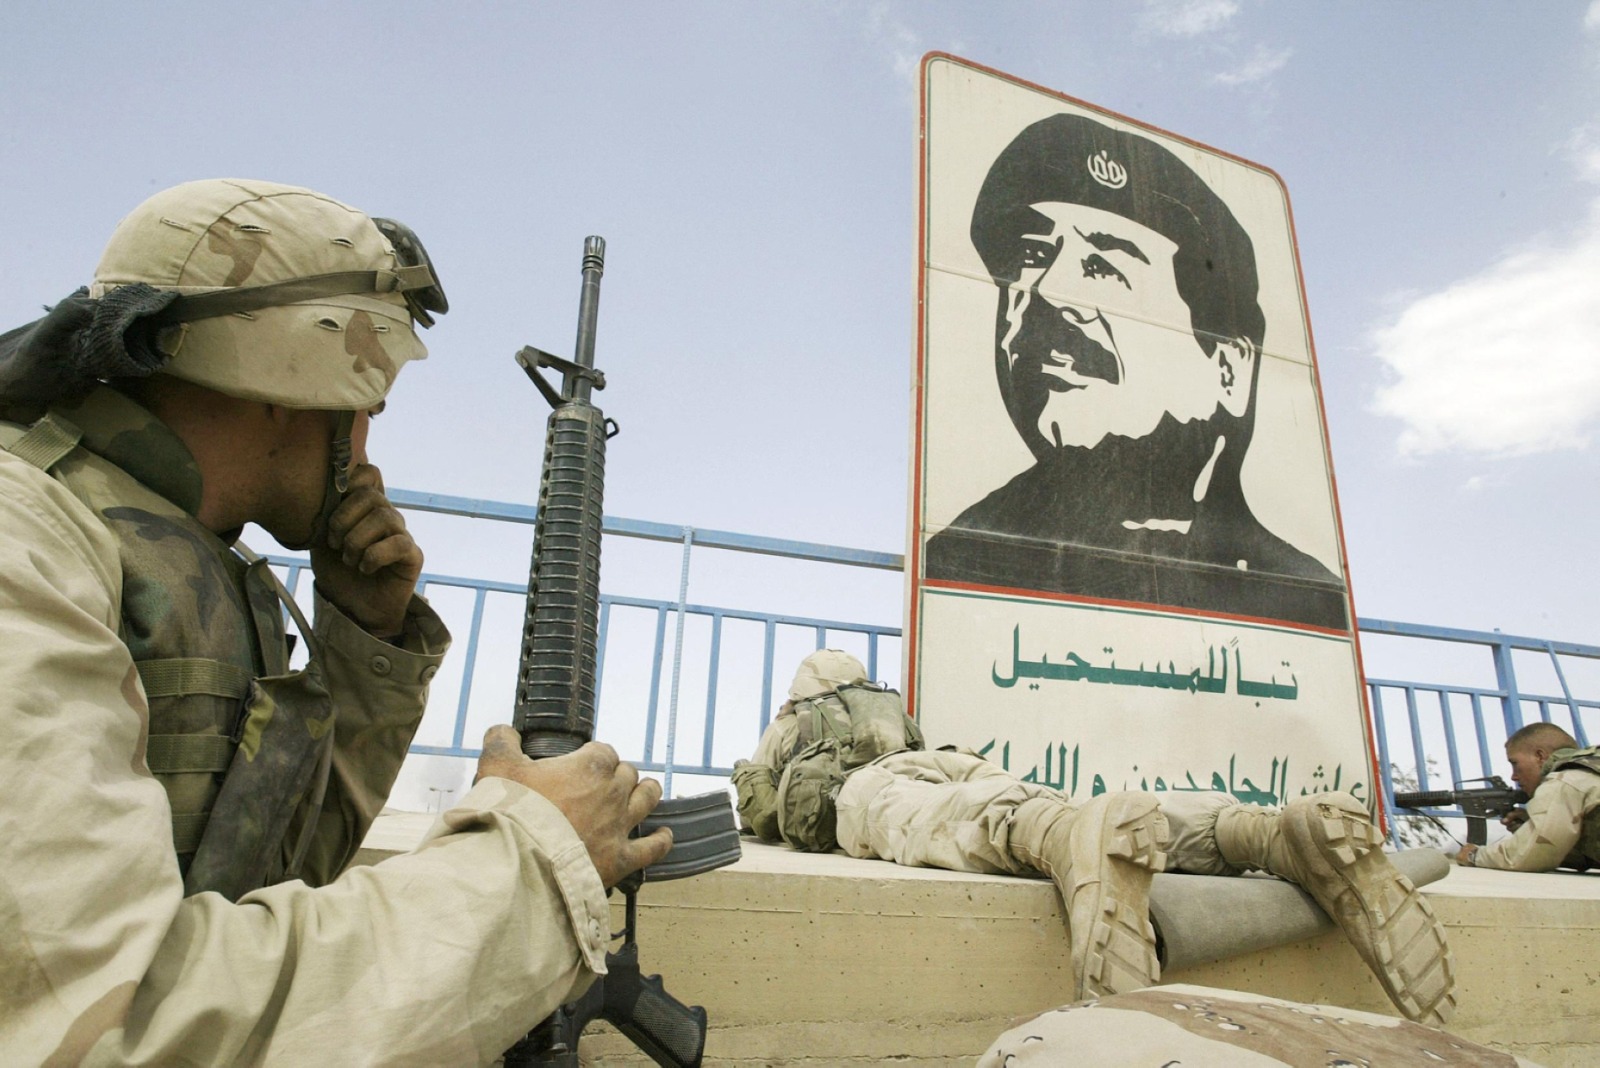 جنود من فرقة المشاة البحرية الأميركية بالقرب من صورة صدام حسين في ملعب ببغداد، 10 أبريل 2003